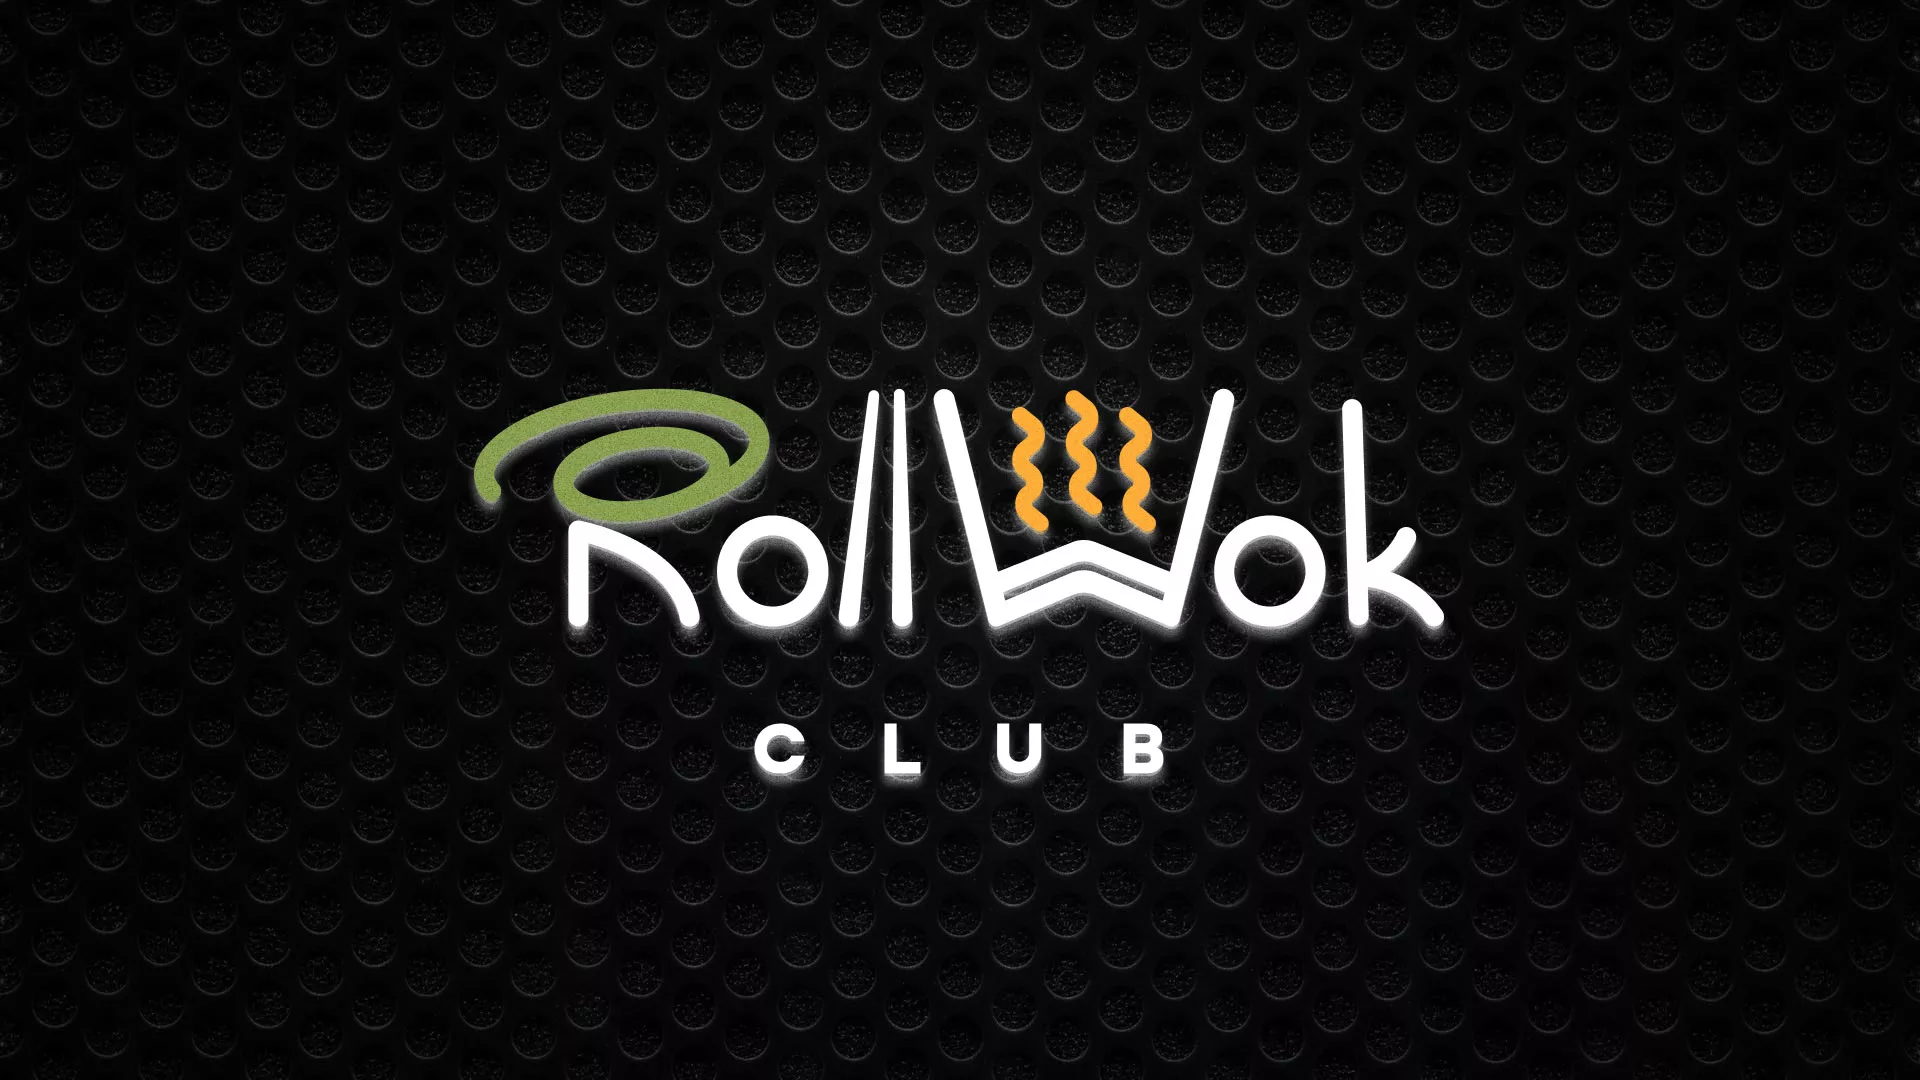 Брендирование торговых точек суши-бара «Roll Wok Club» в Апатитах